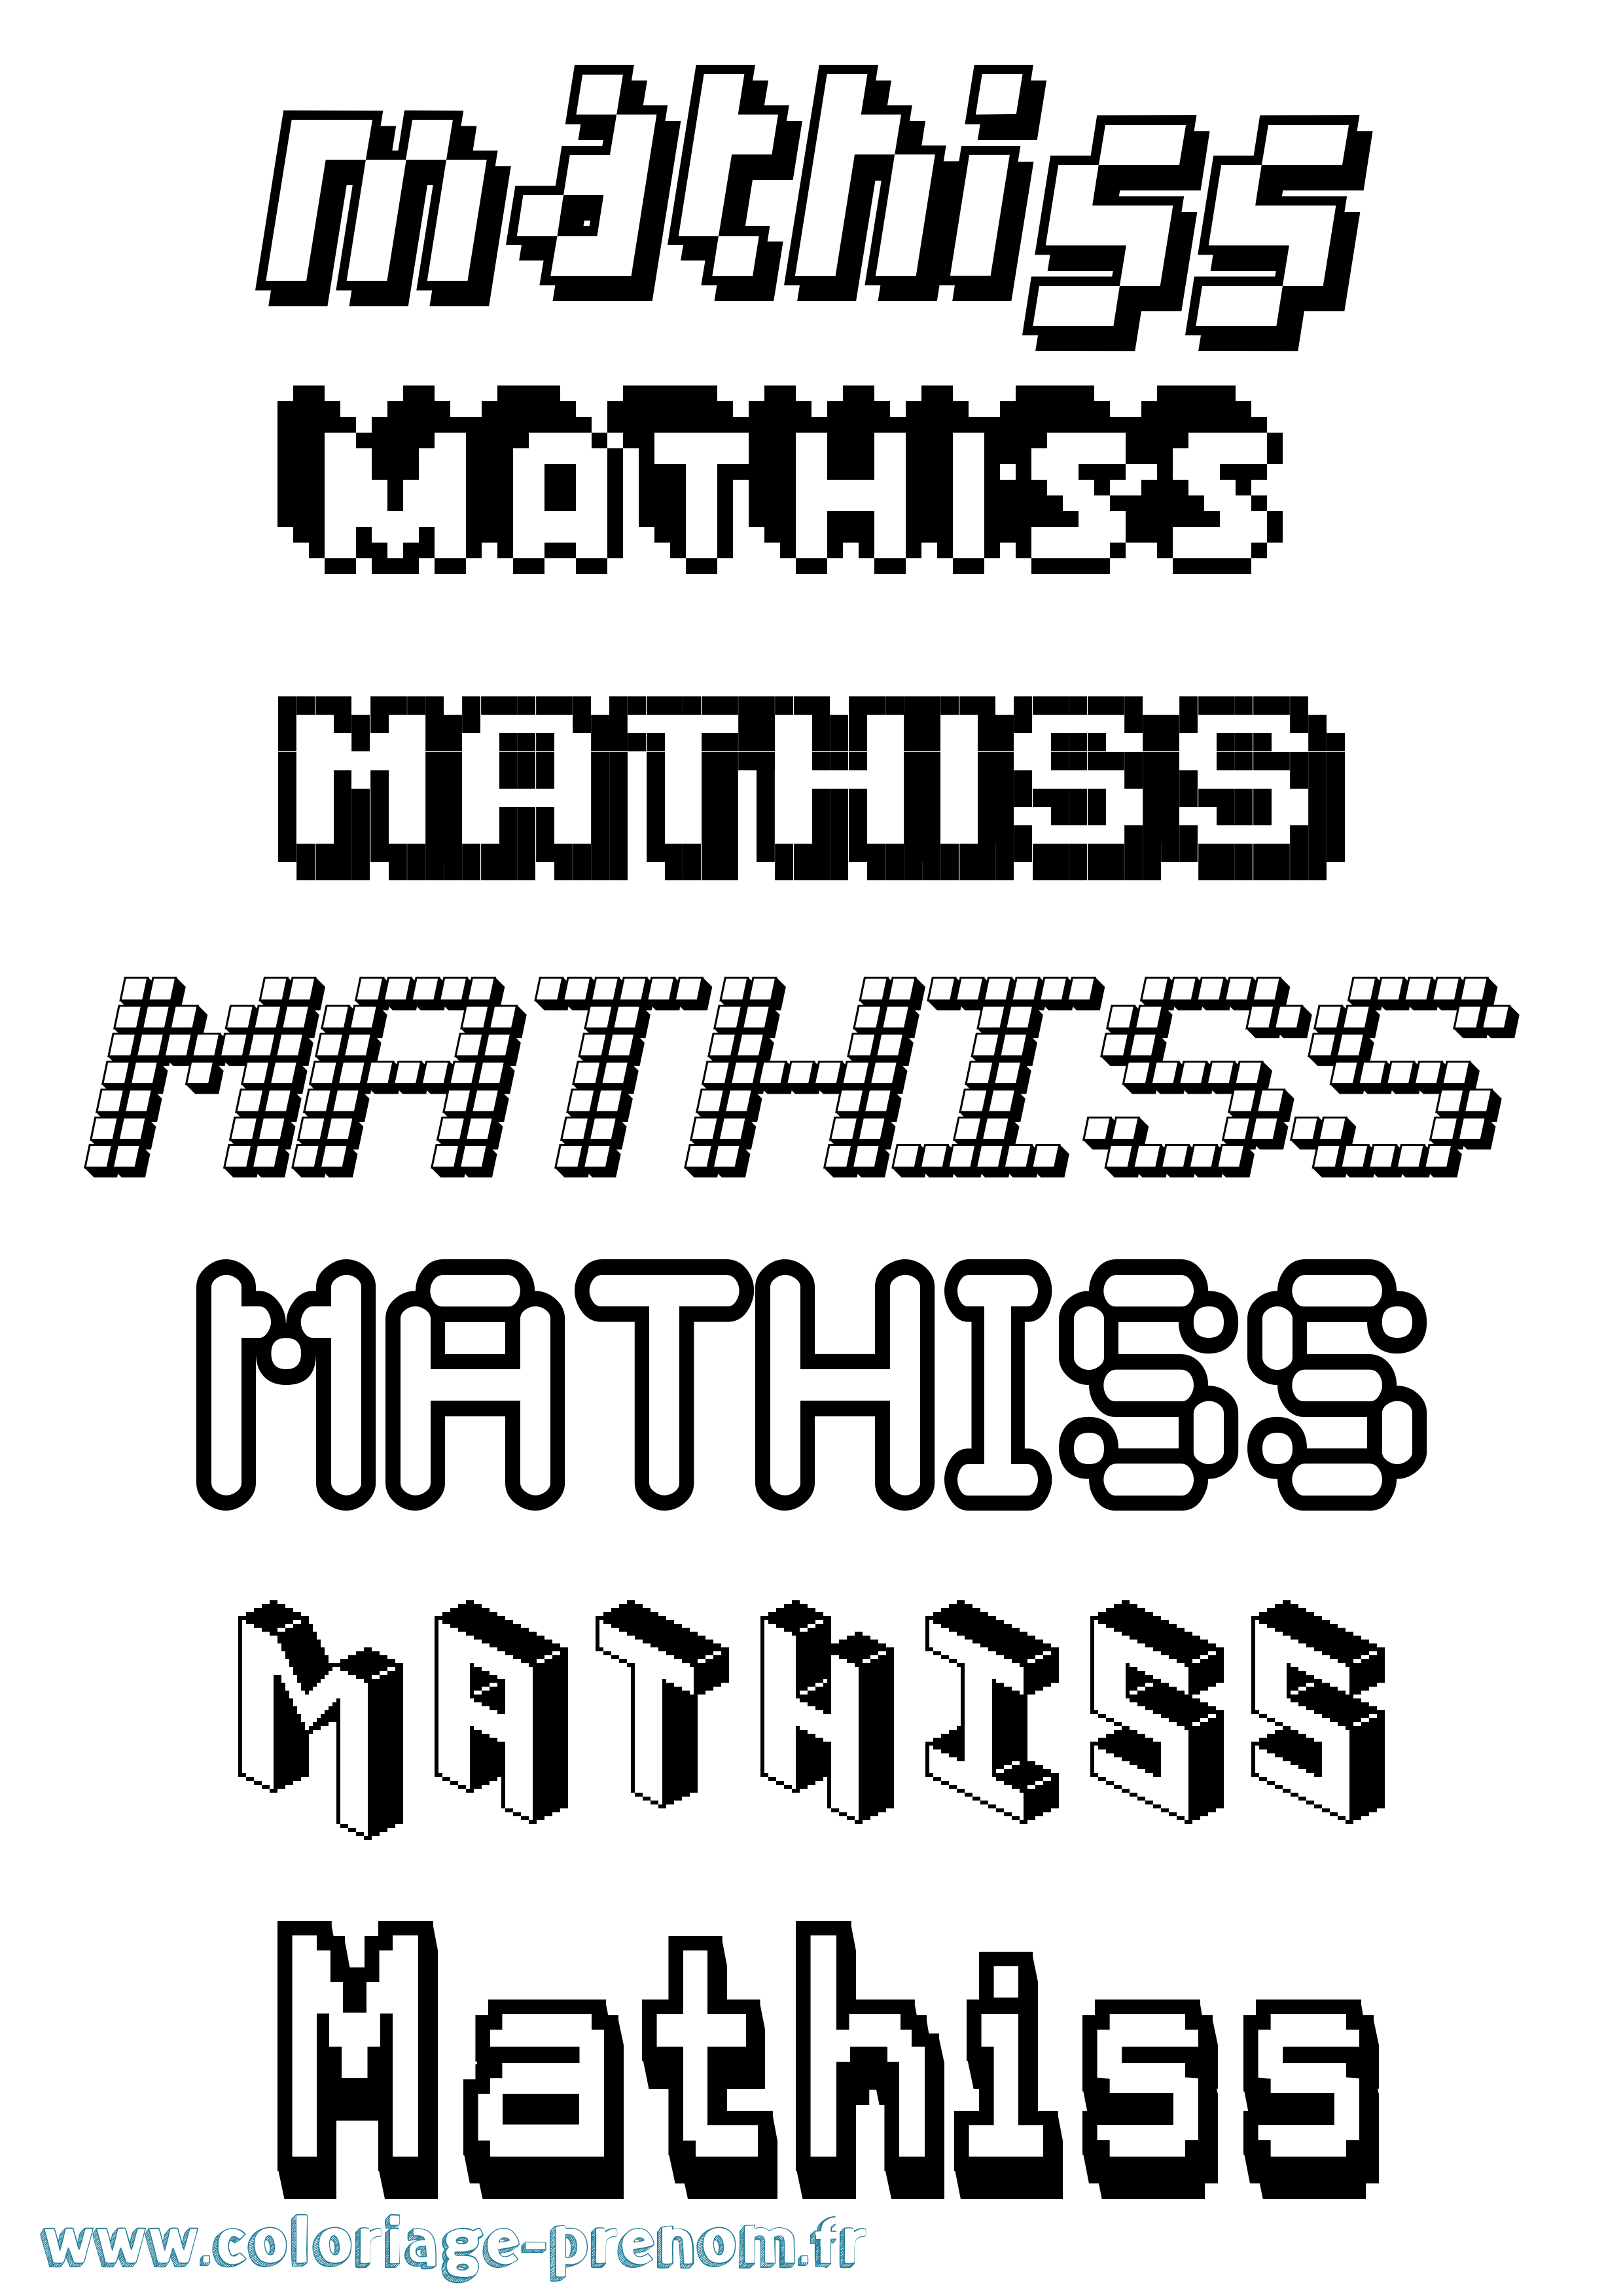 Coloriage prénom Mathiss Pixel